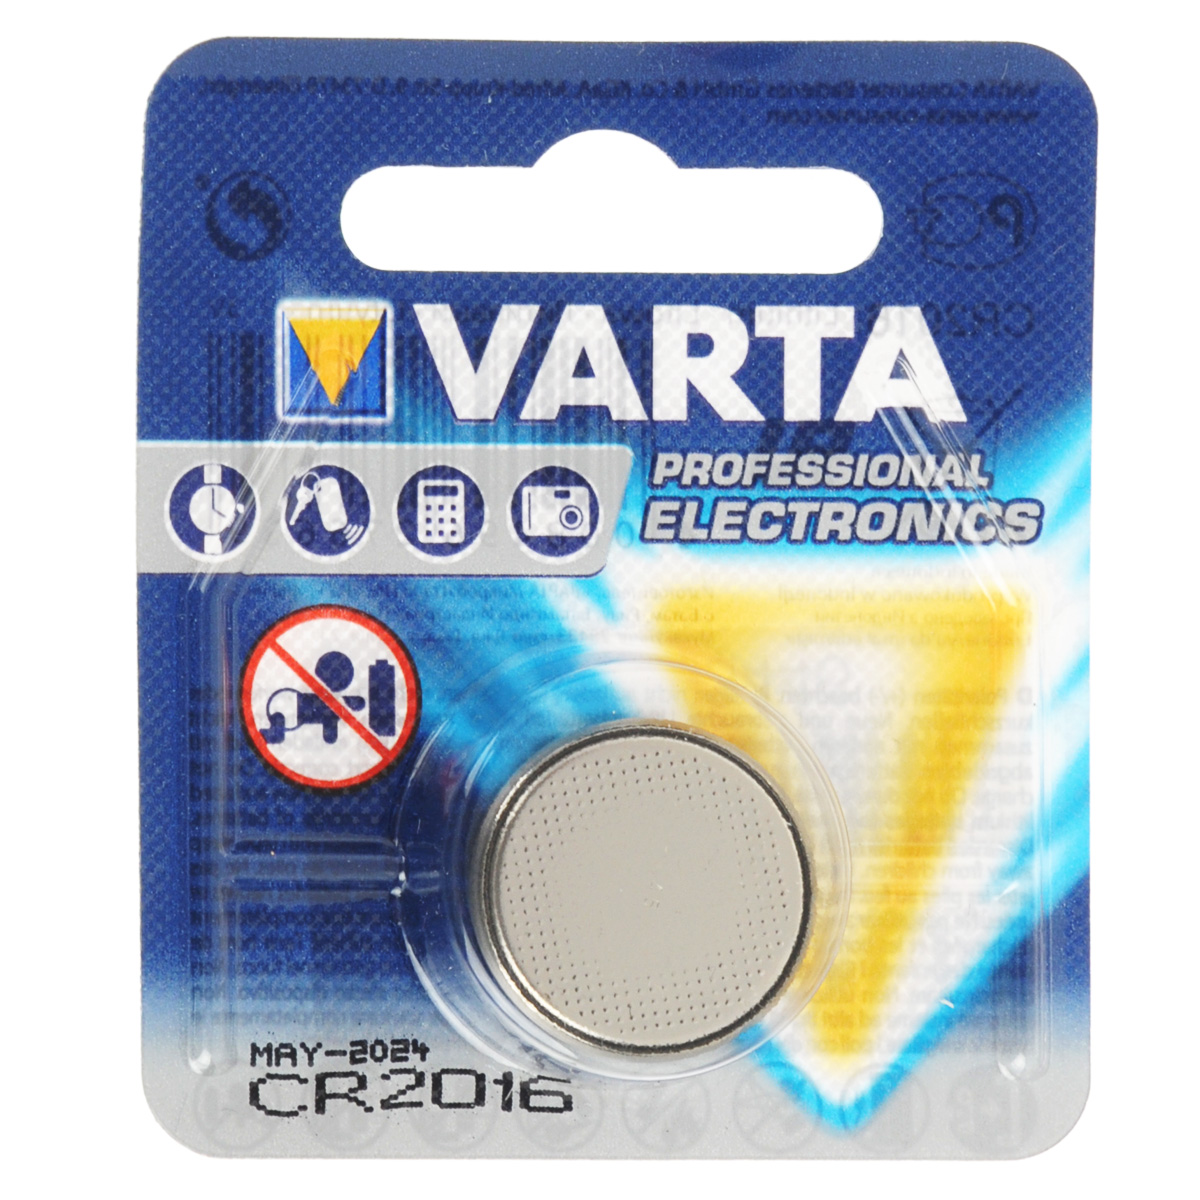 фото Батарейка Varta "Professional Electronics", тип CR2016, 3В, 1 шт